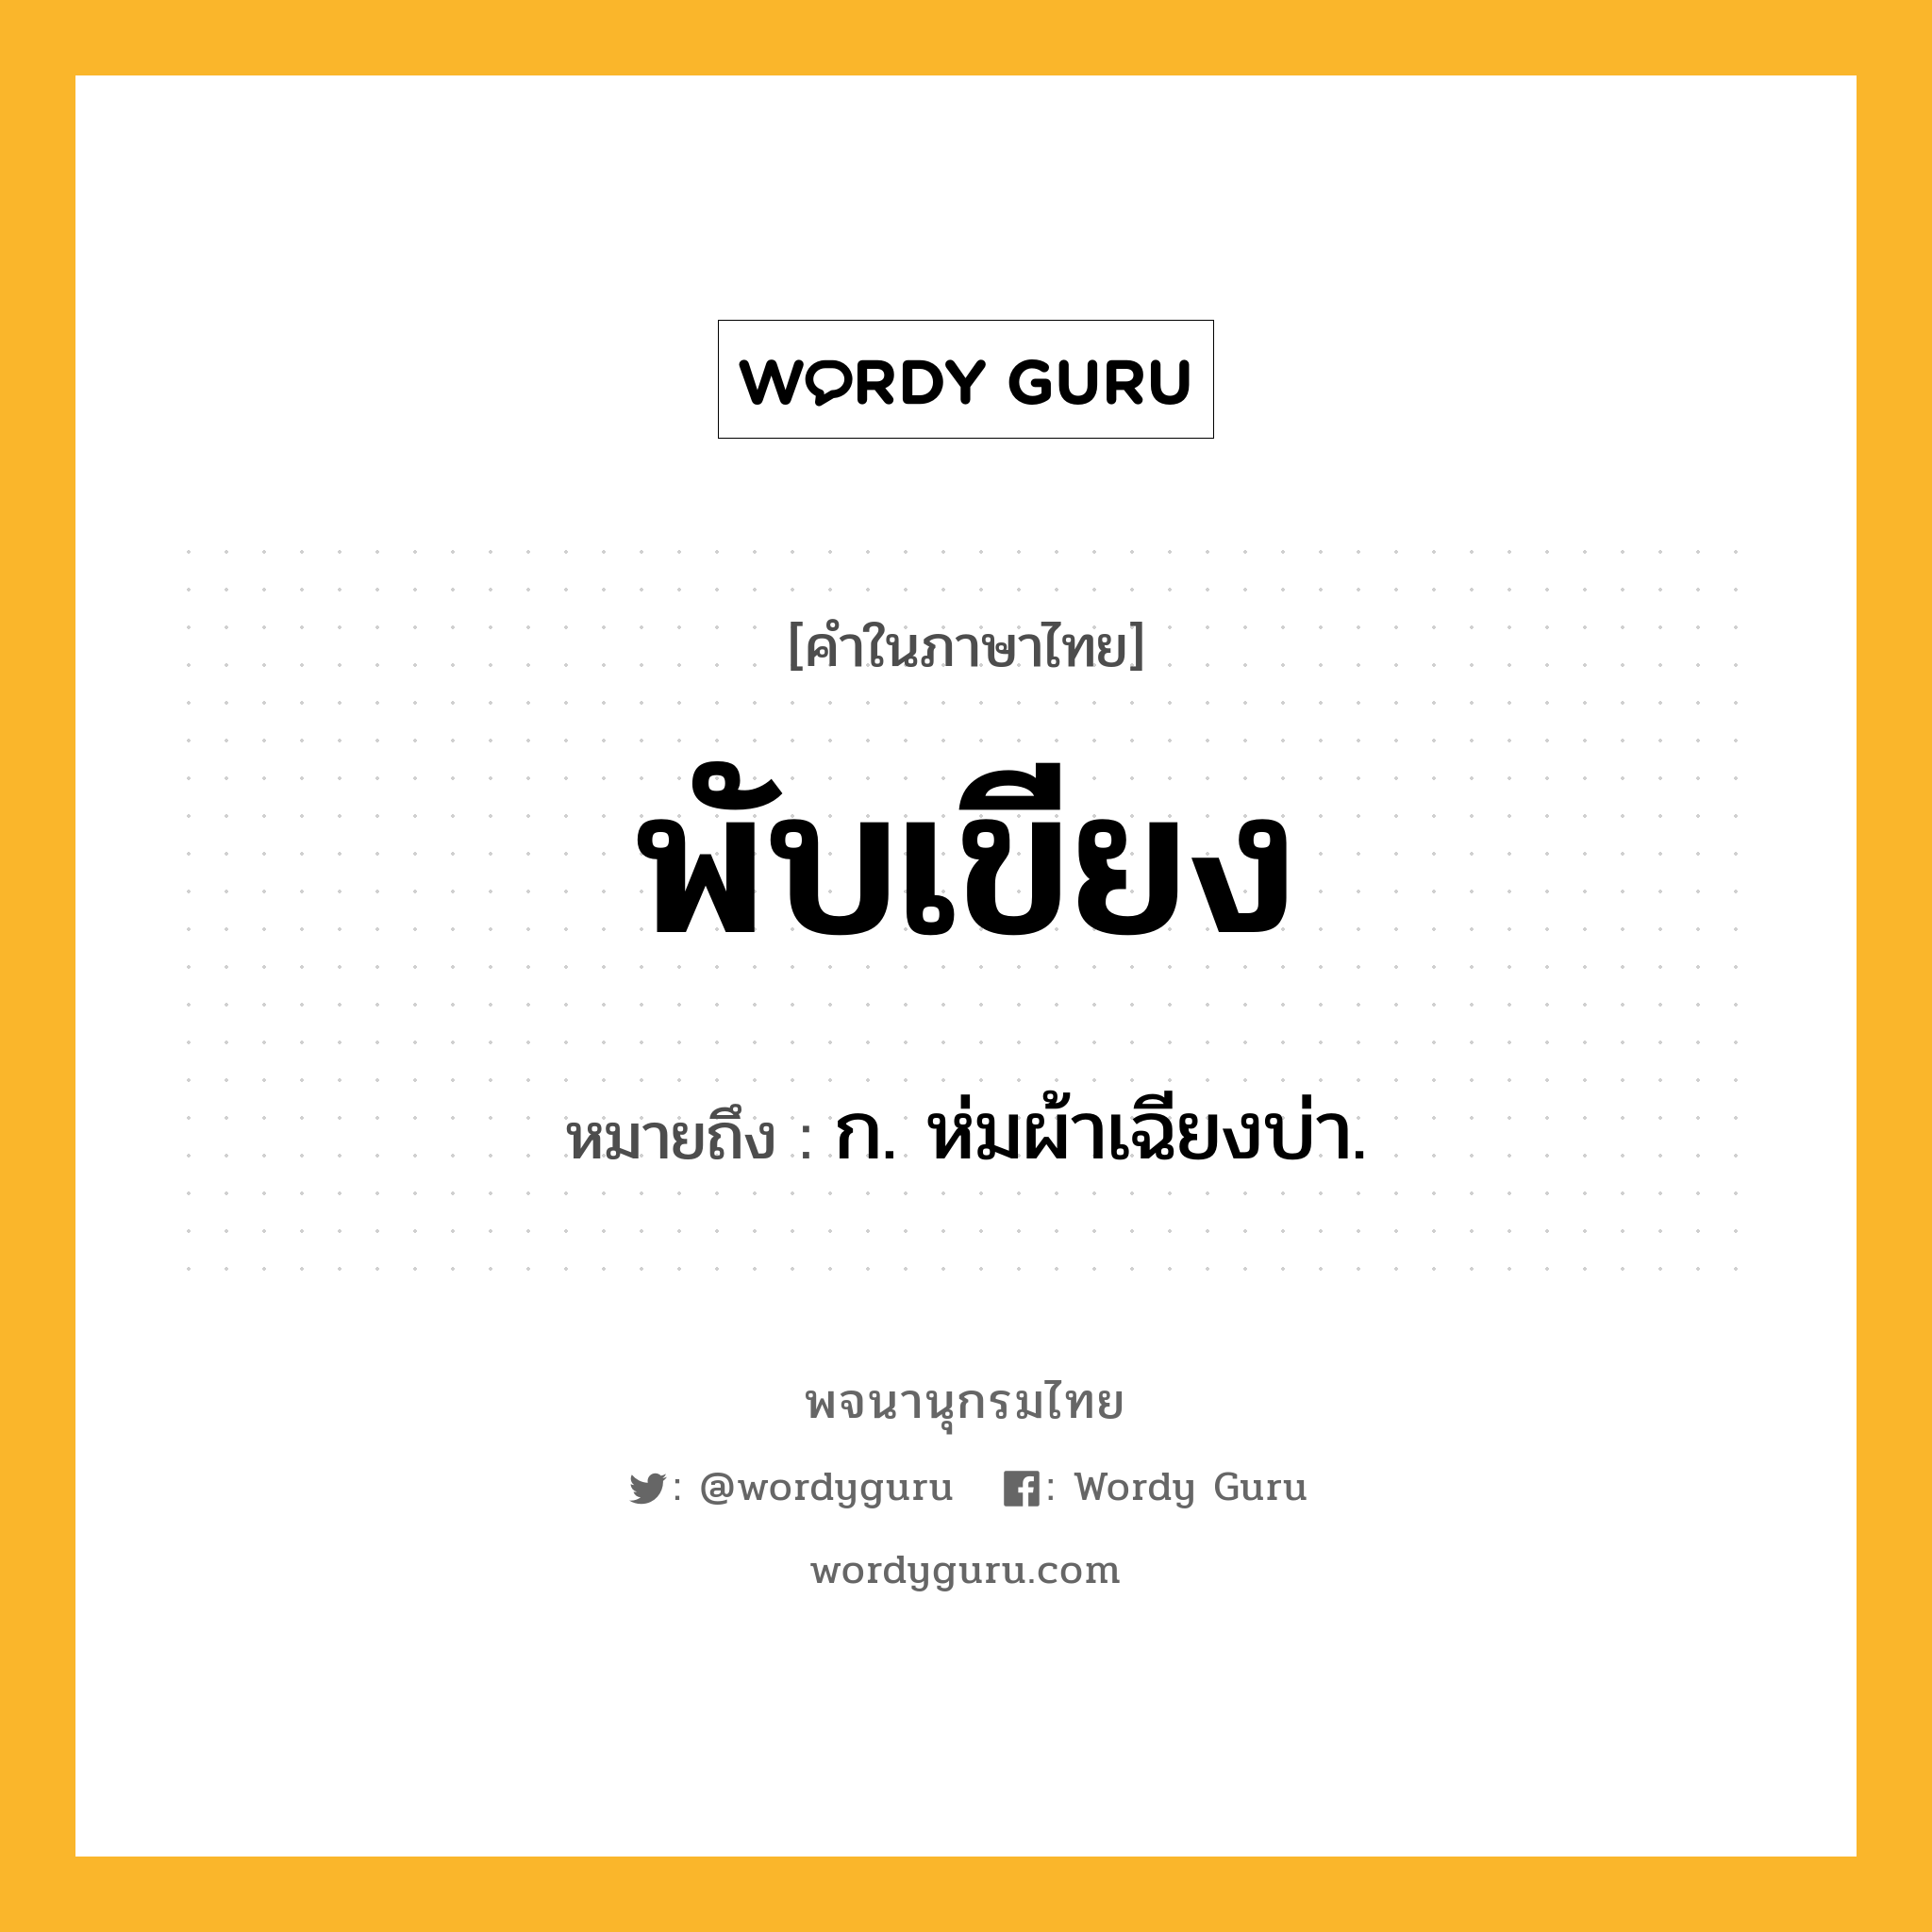 พับเขียง หมายถึงอะไร?, คำในภาษาไทย พับเขียง หมายถึง ก. ห่มผ้าเฉียงบ่า.